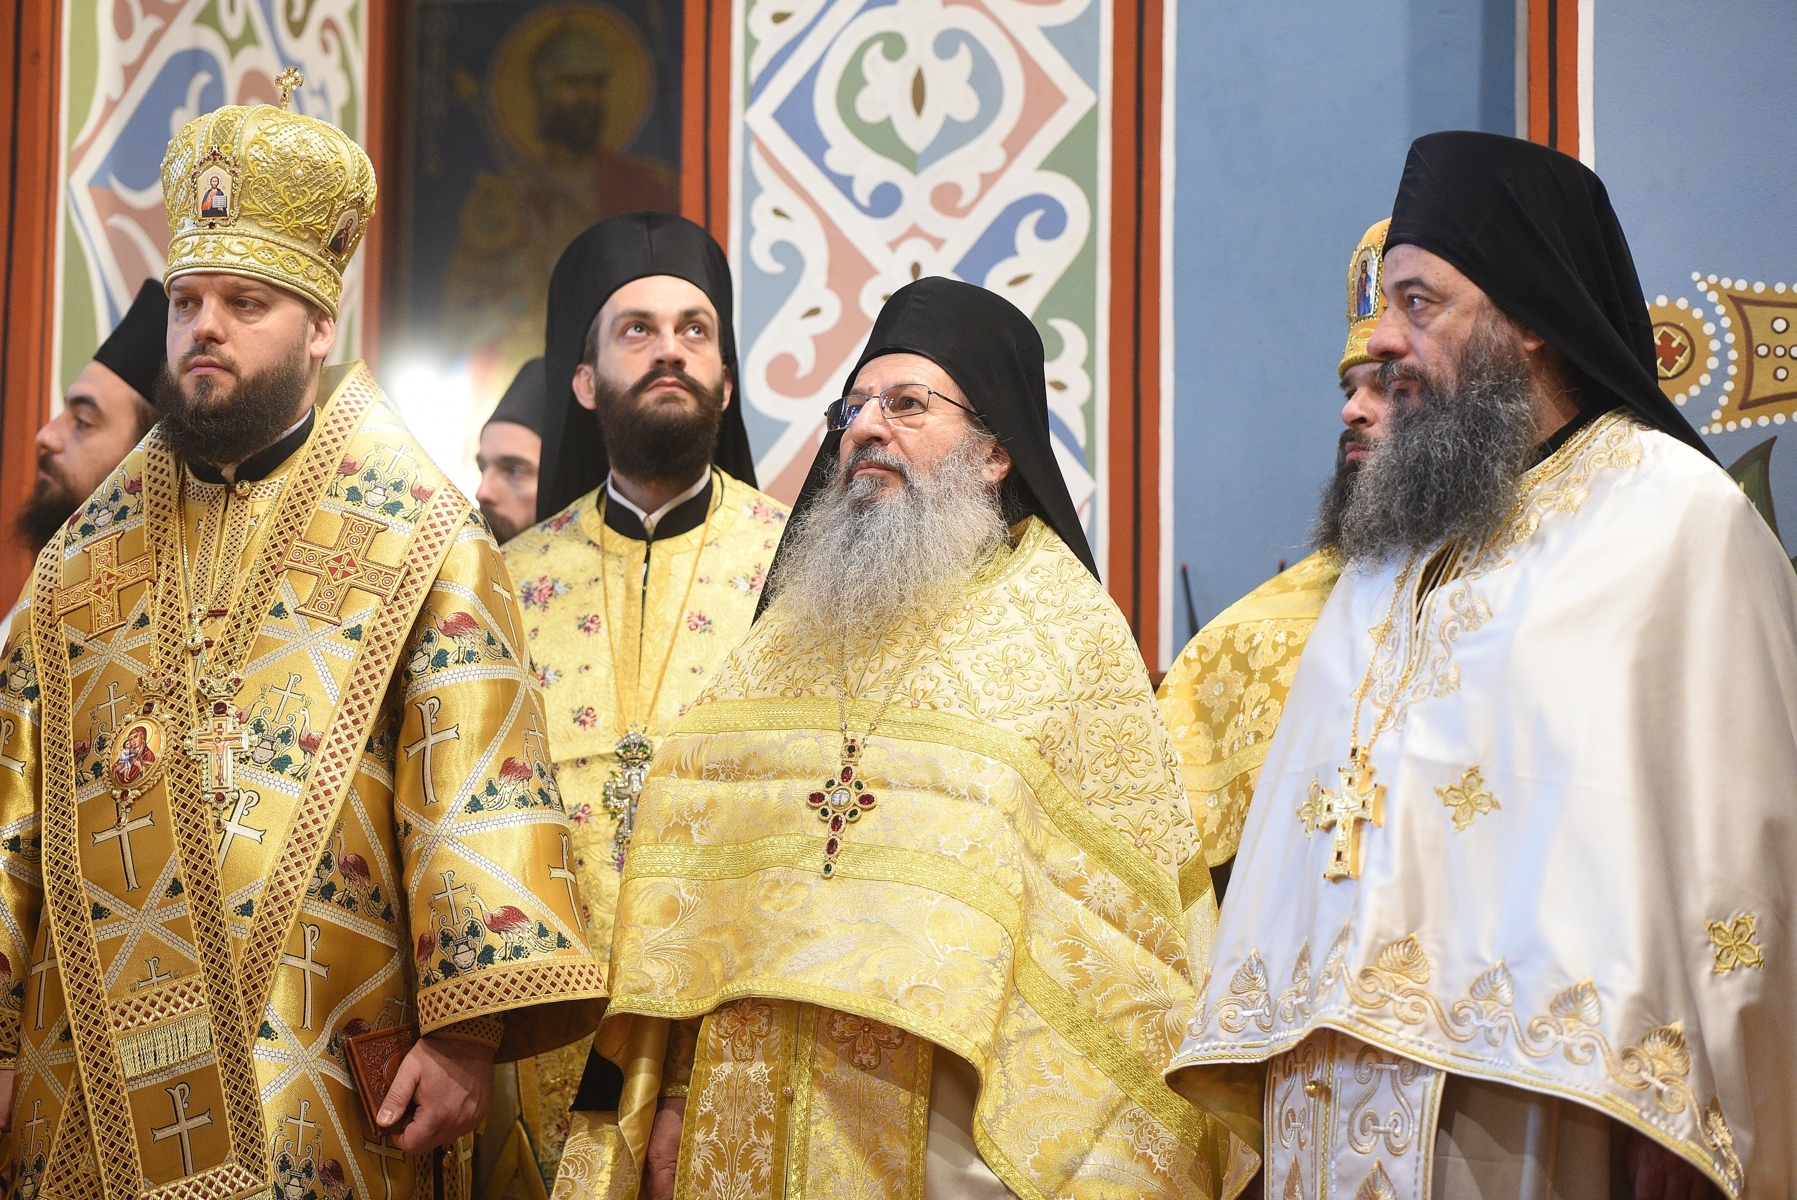 Από την Επίσκεψη στο Κίεβο του Σεβασμιωτάτου Μητροπολίτου Γαλλίας  κ.κ. Εμμανουήλ ως Εκπρόσωπου του Οικουμενικού Πατριαρχείου της Μητρός Εκκλησίας επί τη ευκαιρία των Εορταστικών Εκδηλώσεων ενός Έτους Αναγνωρίσεως της Αυτοκεφάλου Εκκλησίας της Ουκρανίας